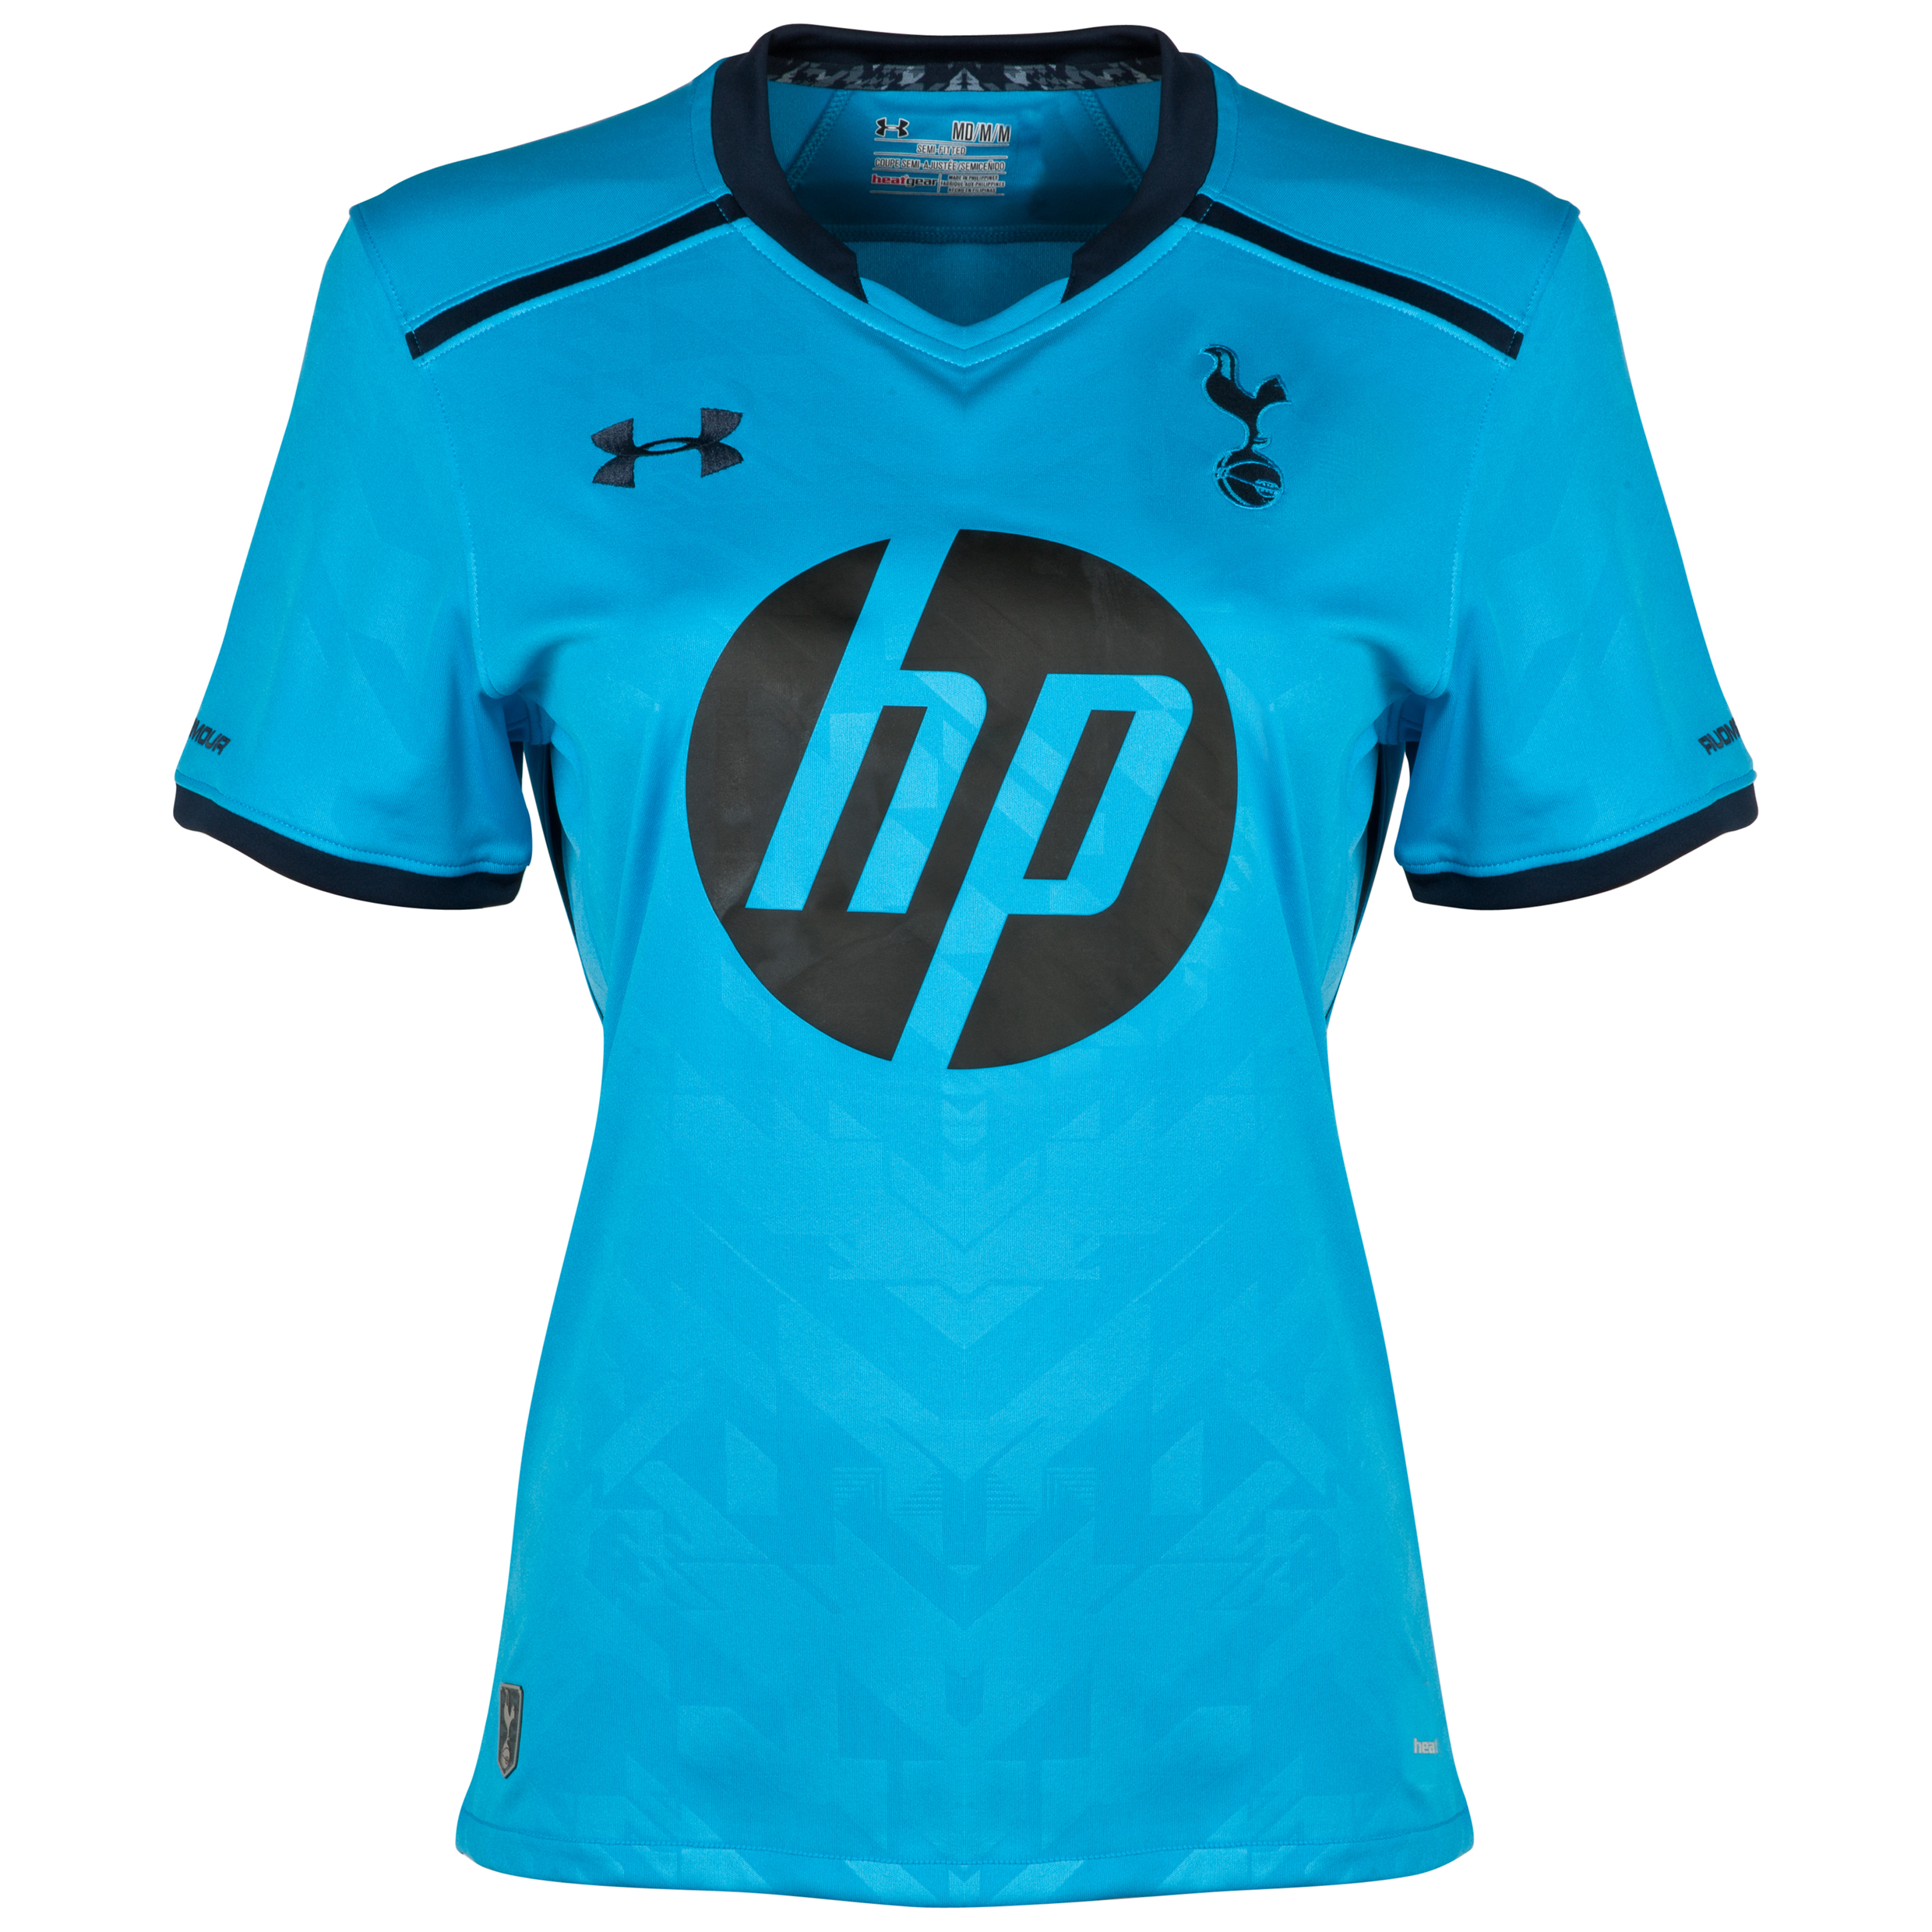 Tottenham Hotspur Away Shirt 2013/14 - Womens